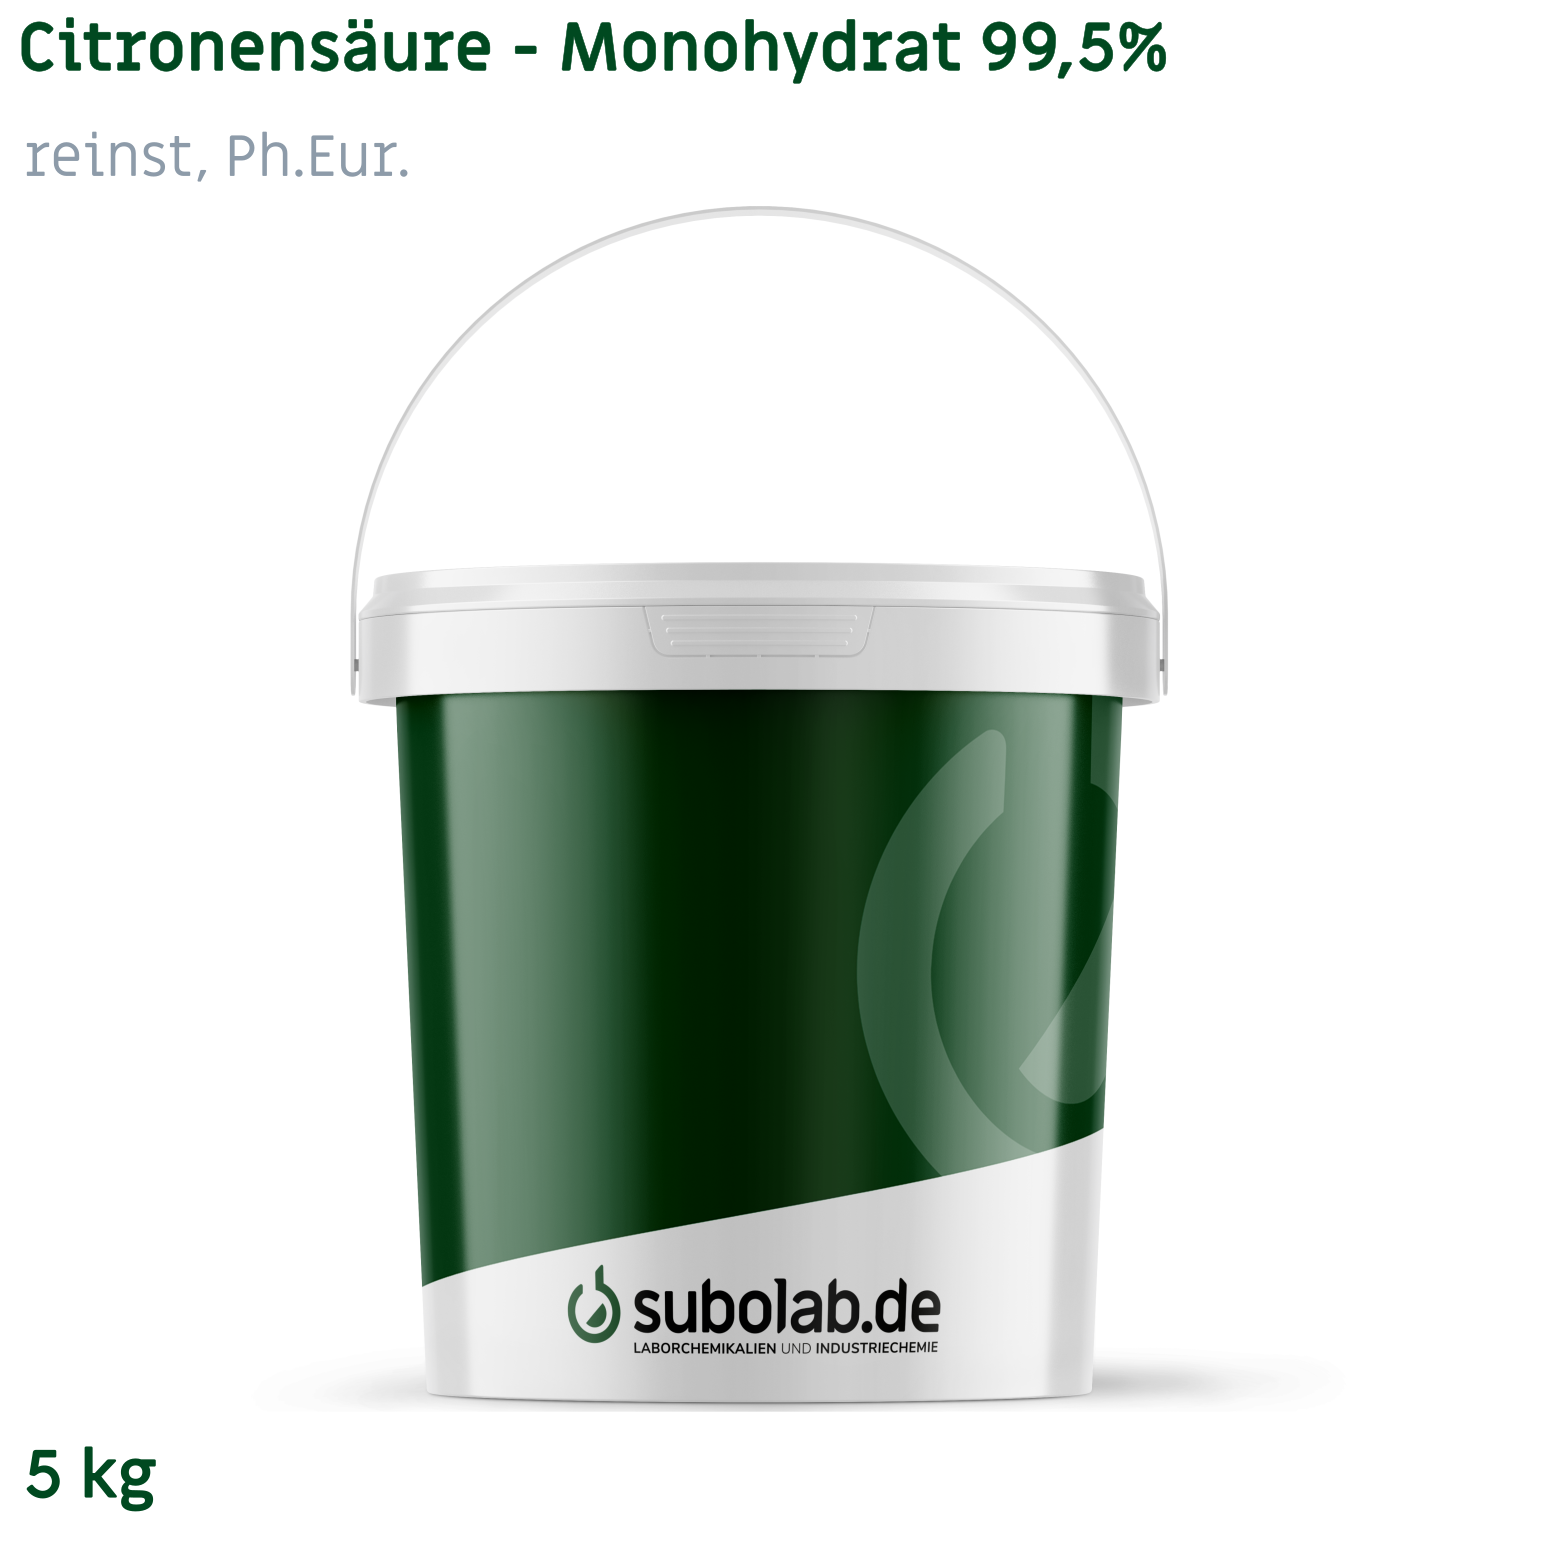 Bild von Citronensäure - Monohydrat 99,5% reinst, Ph.Eur. (5 kg)